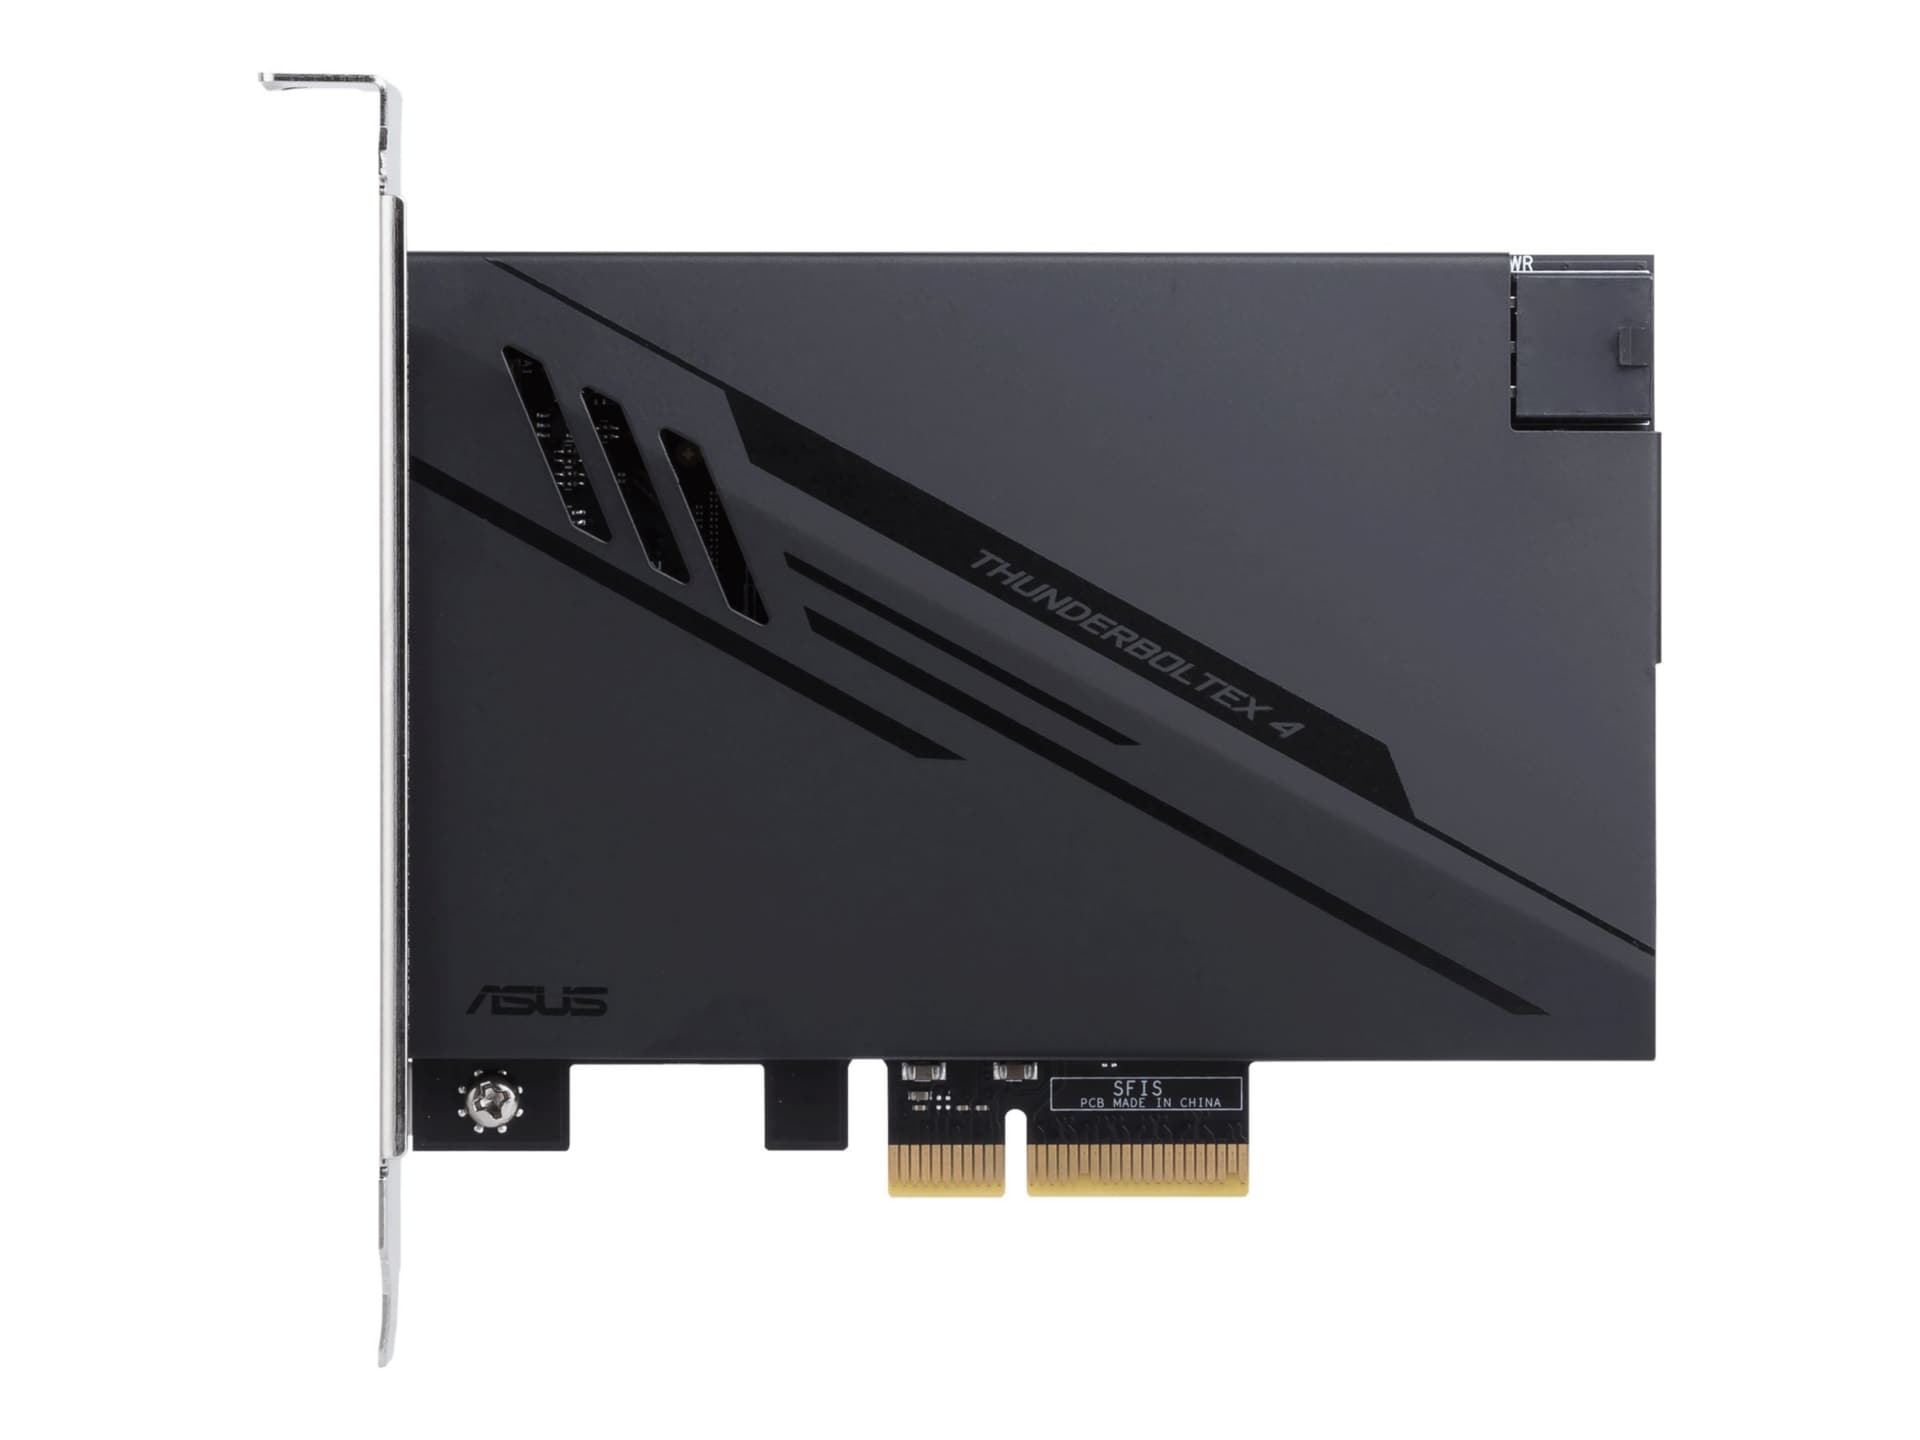 Asus ThunderboltEX 4 - Thunderbolt adapter - PCIe 3,0 x4 - Thunderbolt 4 x